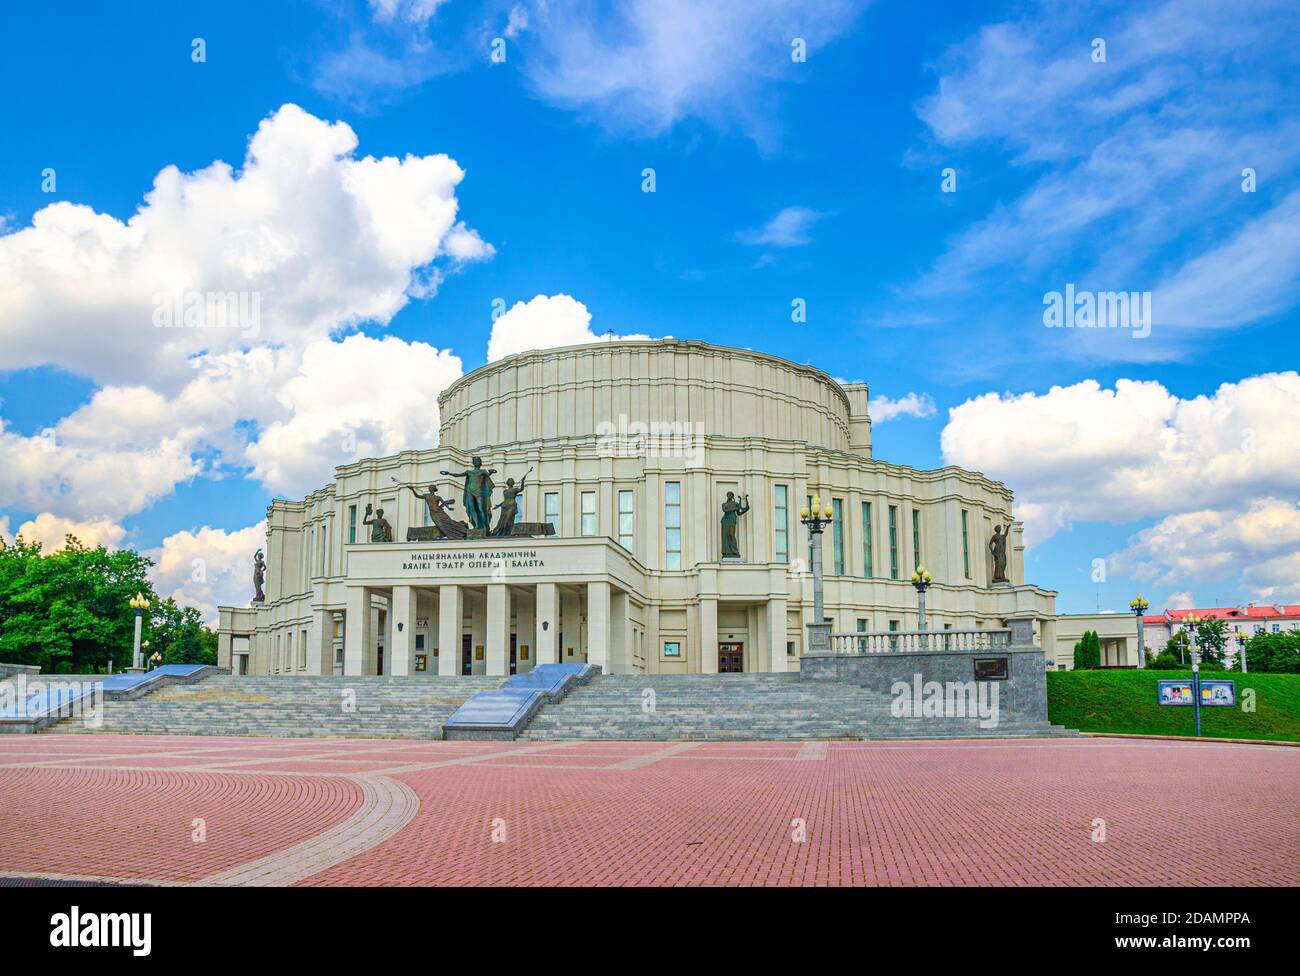 Minsk, Bielorussia, 26 luglio 2020: L'edificio National Academic Grand Opera and Ballet Theatre nel parco nel quartiere Trinity Hill del centro storico della città, le nuvole blu cielo bianco nella soleggiata giornata estiva Foto Stock